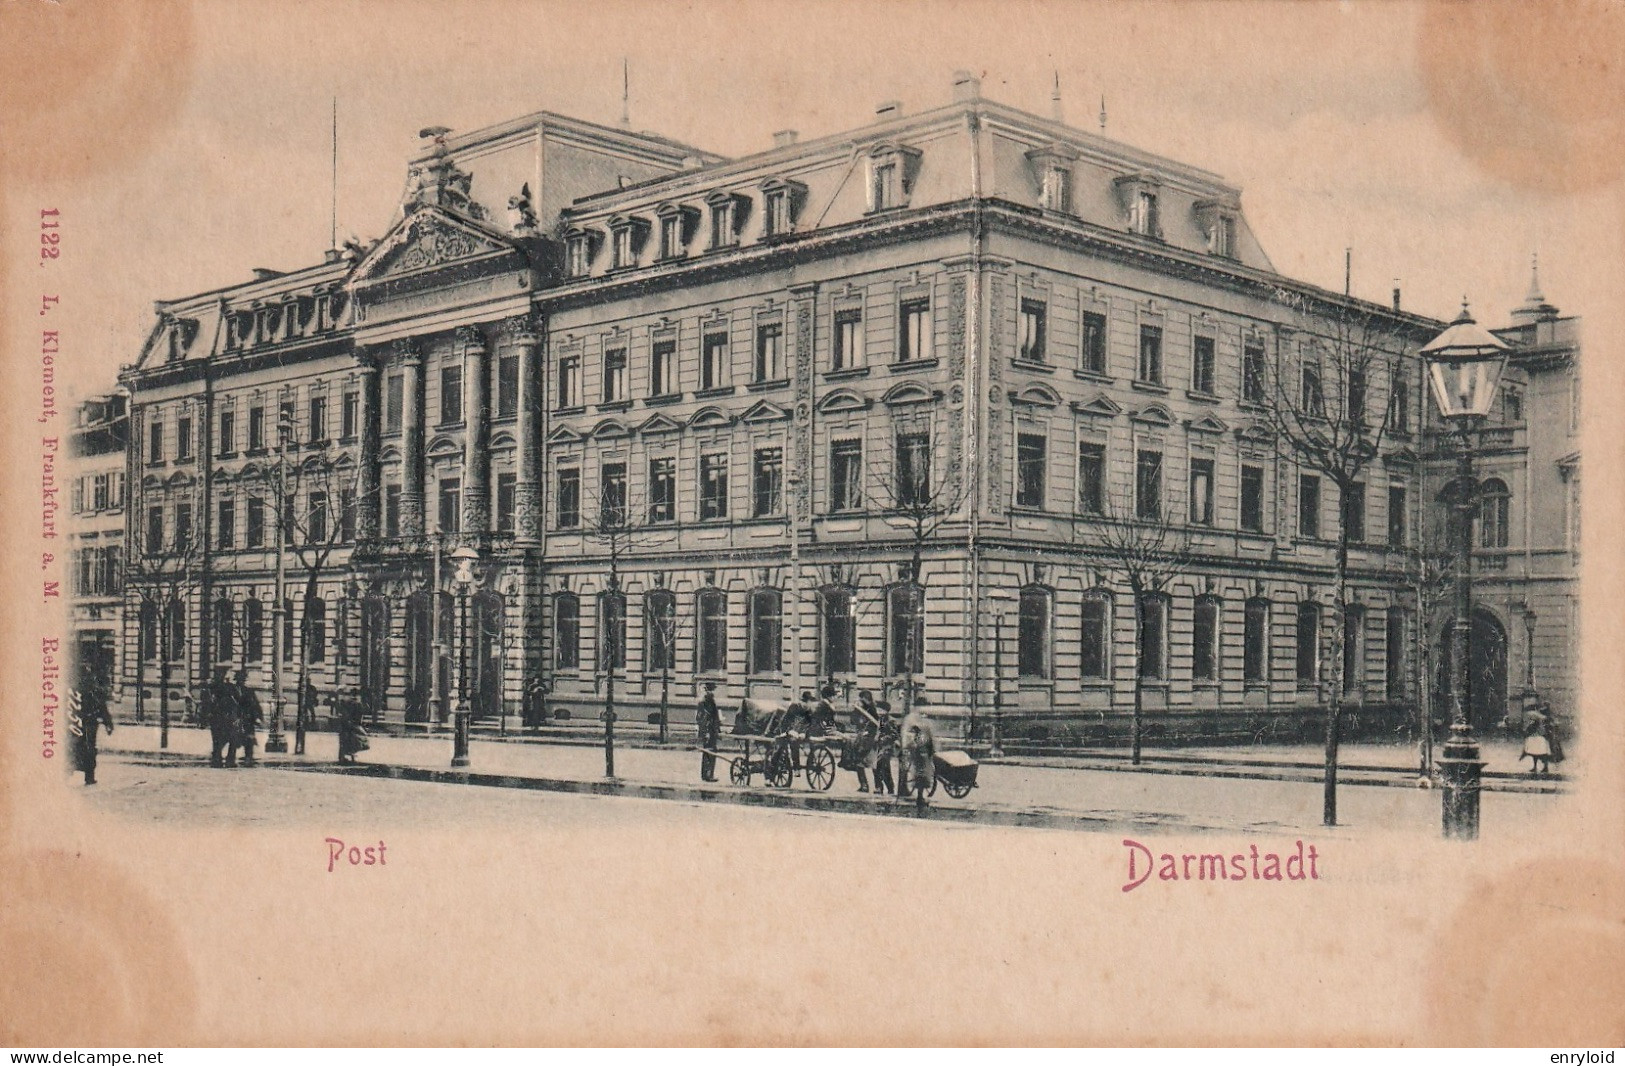 Post Darmstadt - Darmstadt